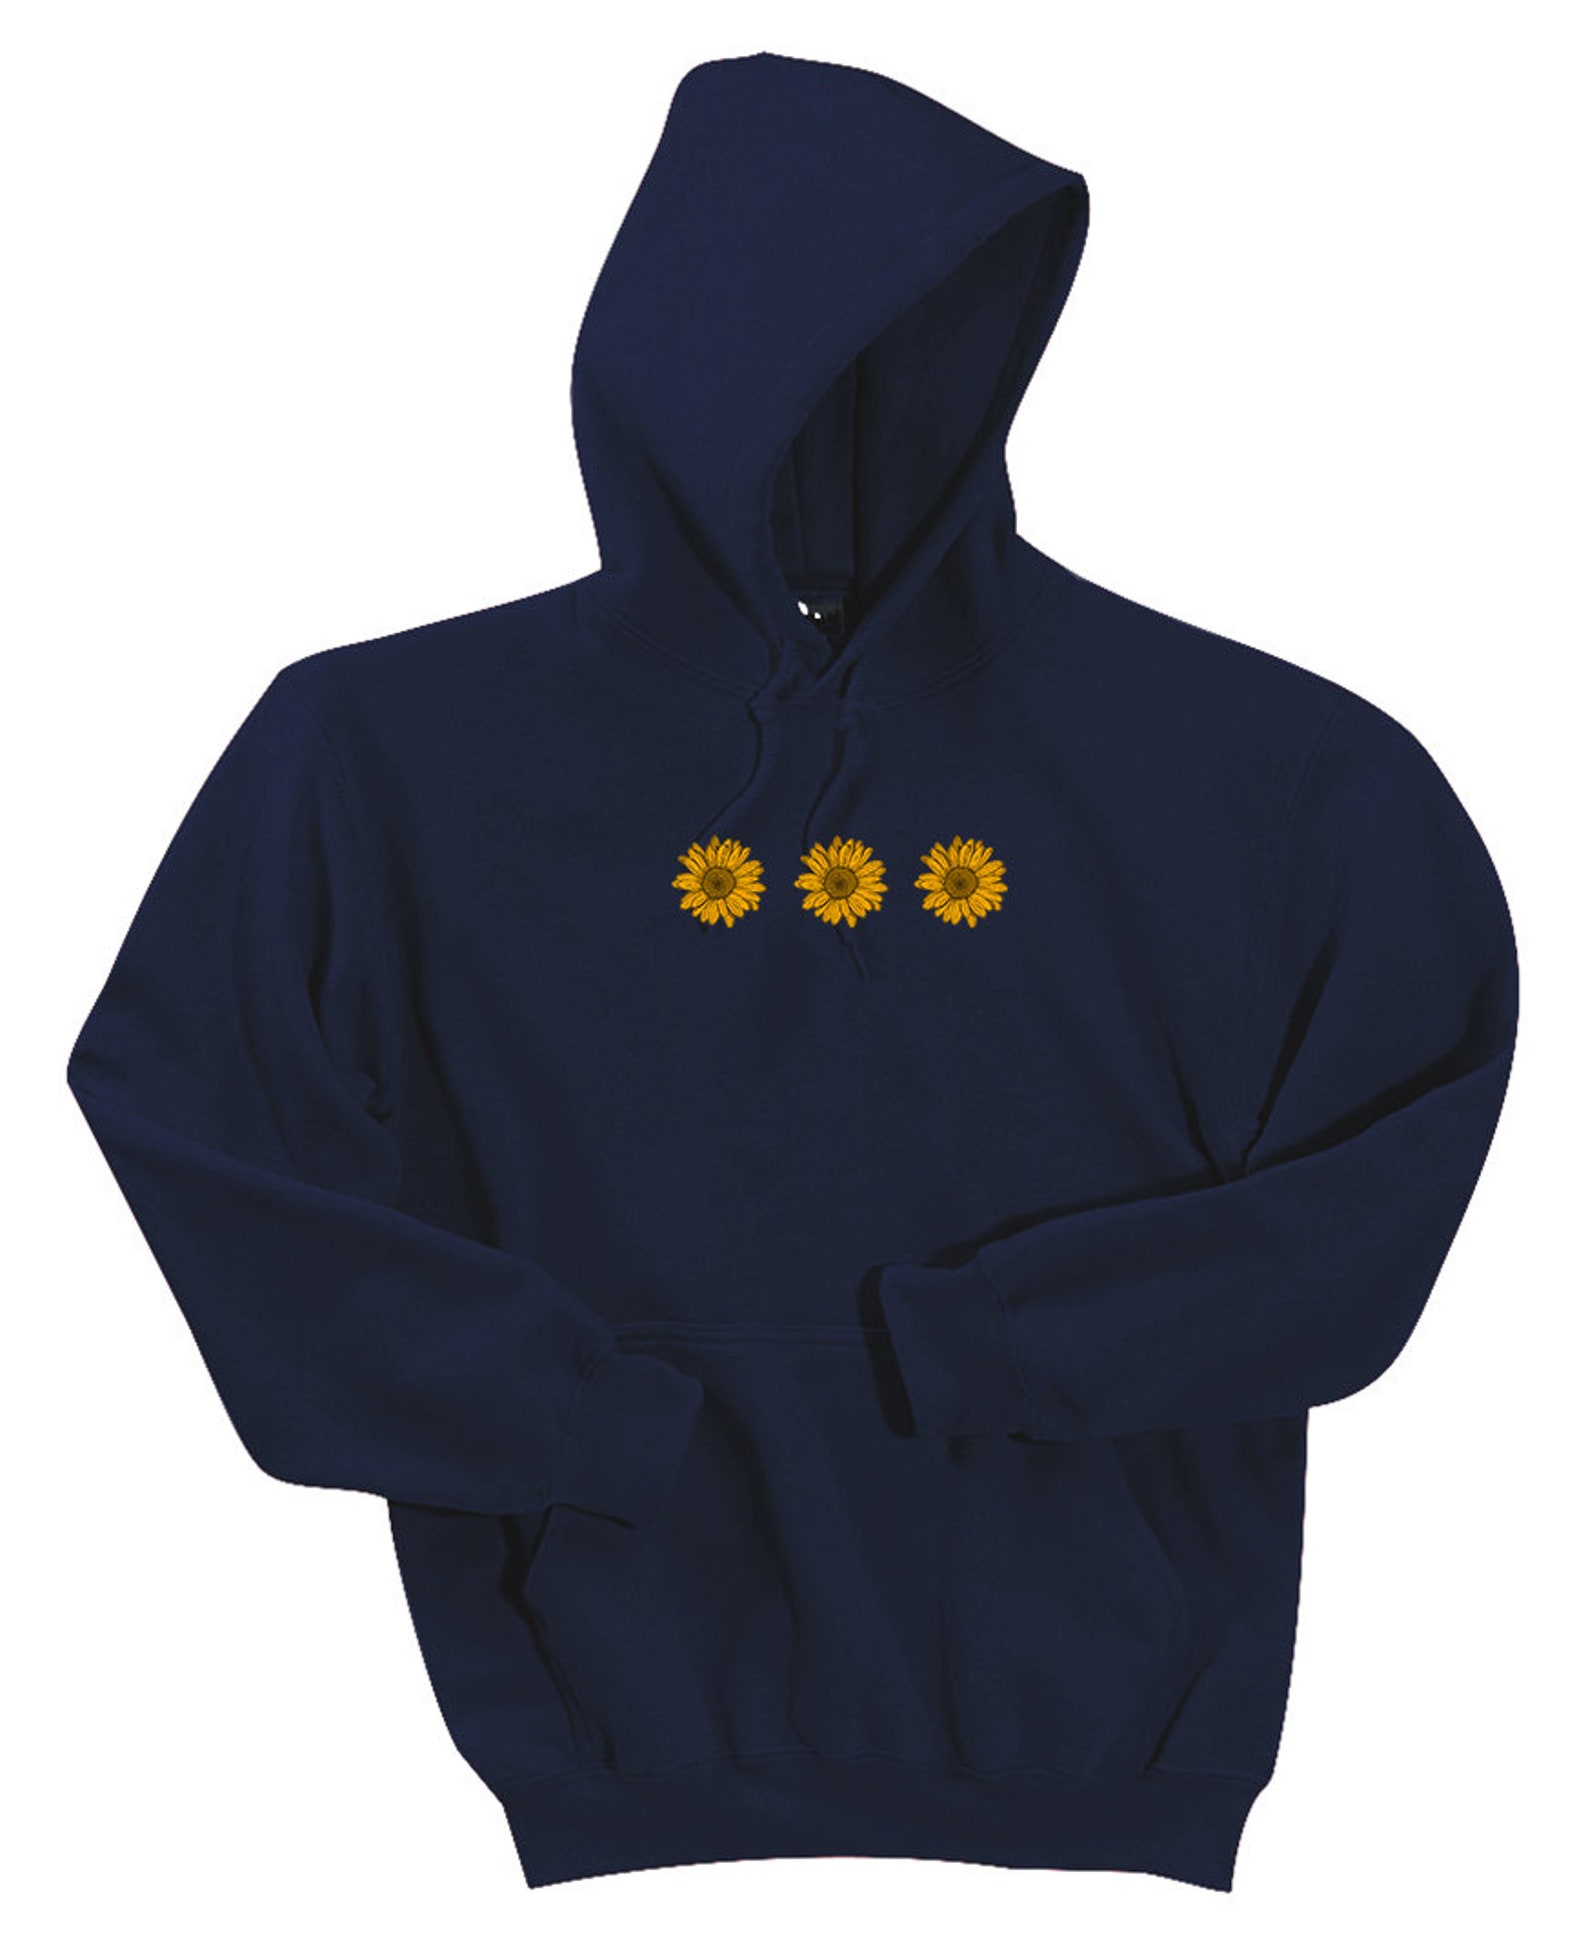 Ink Stitch Unisex Sunflower Hoodies Sweatshirts 12500 15 | Etsy